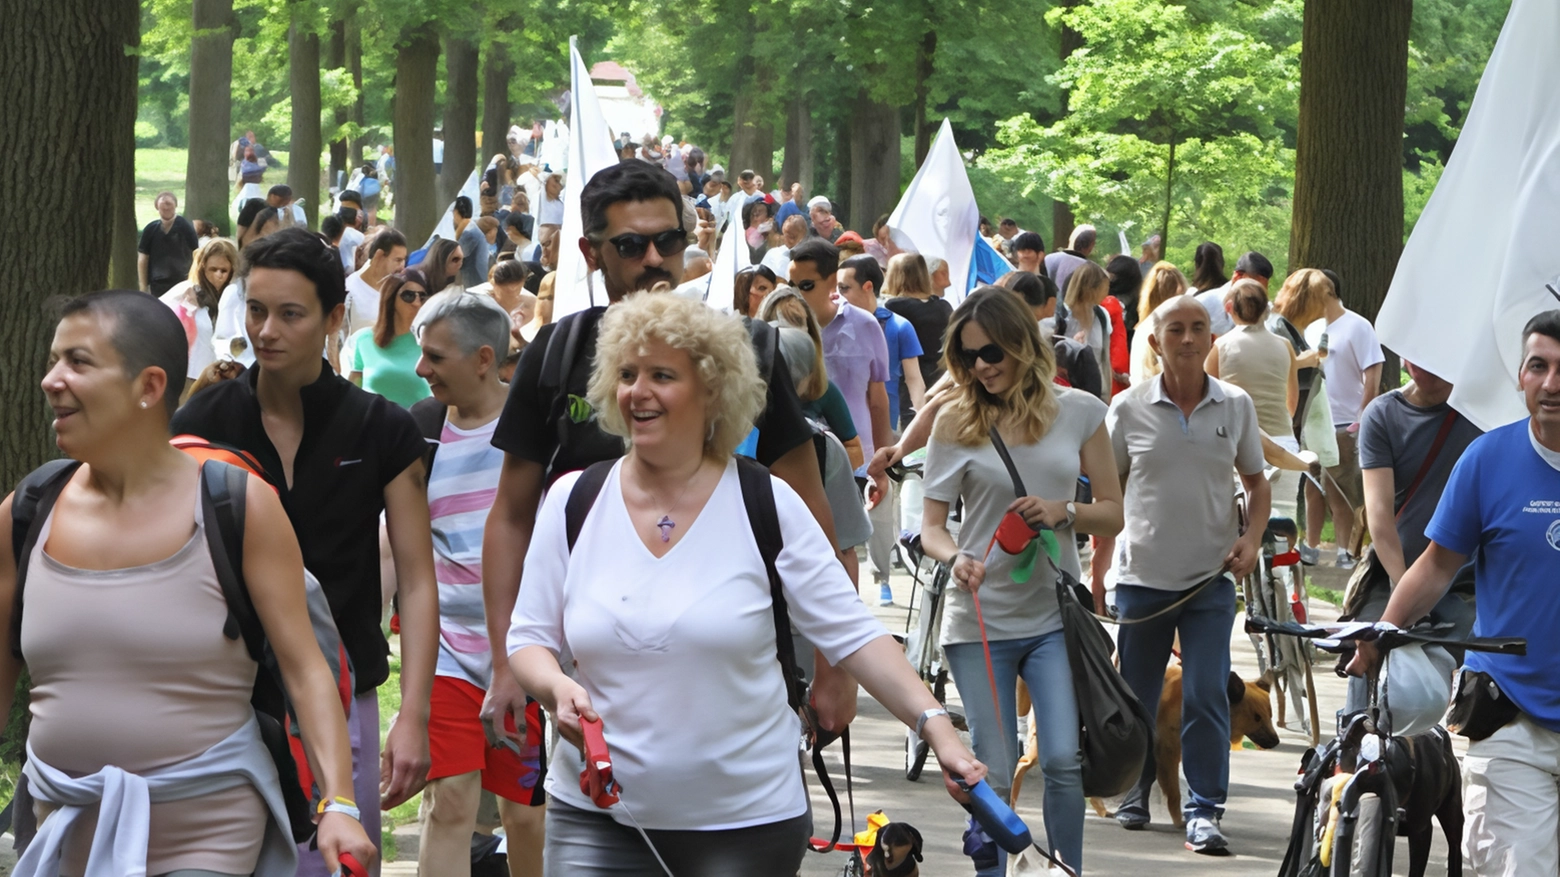 Il 19 maggio a Monza si terrà la 30esima edizione di "4 passi a 4 zampe", la camminata benefica organizzata dall'Enpa nel Parco di Monza. Un evento imperdibile per gli amanti degli animali.